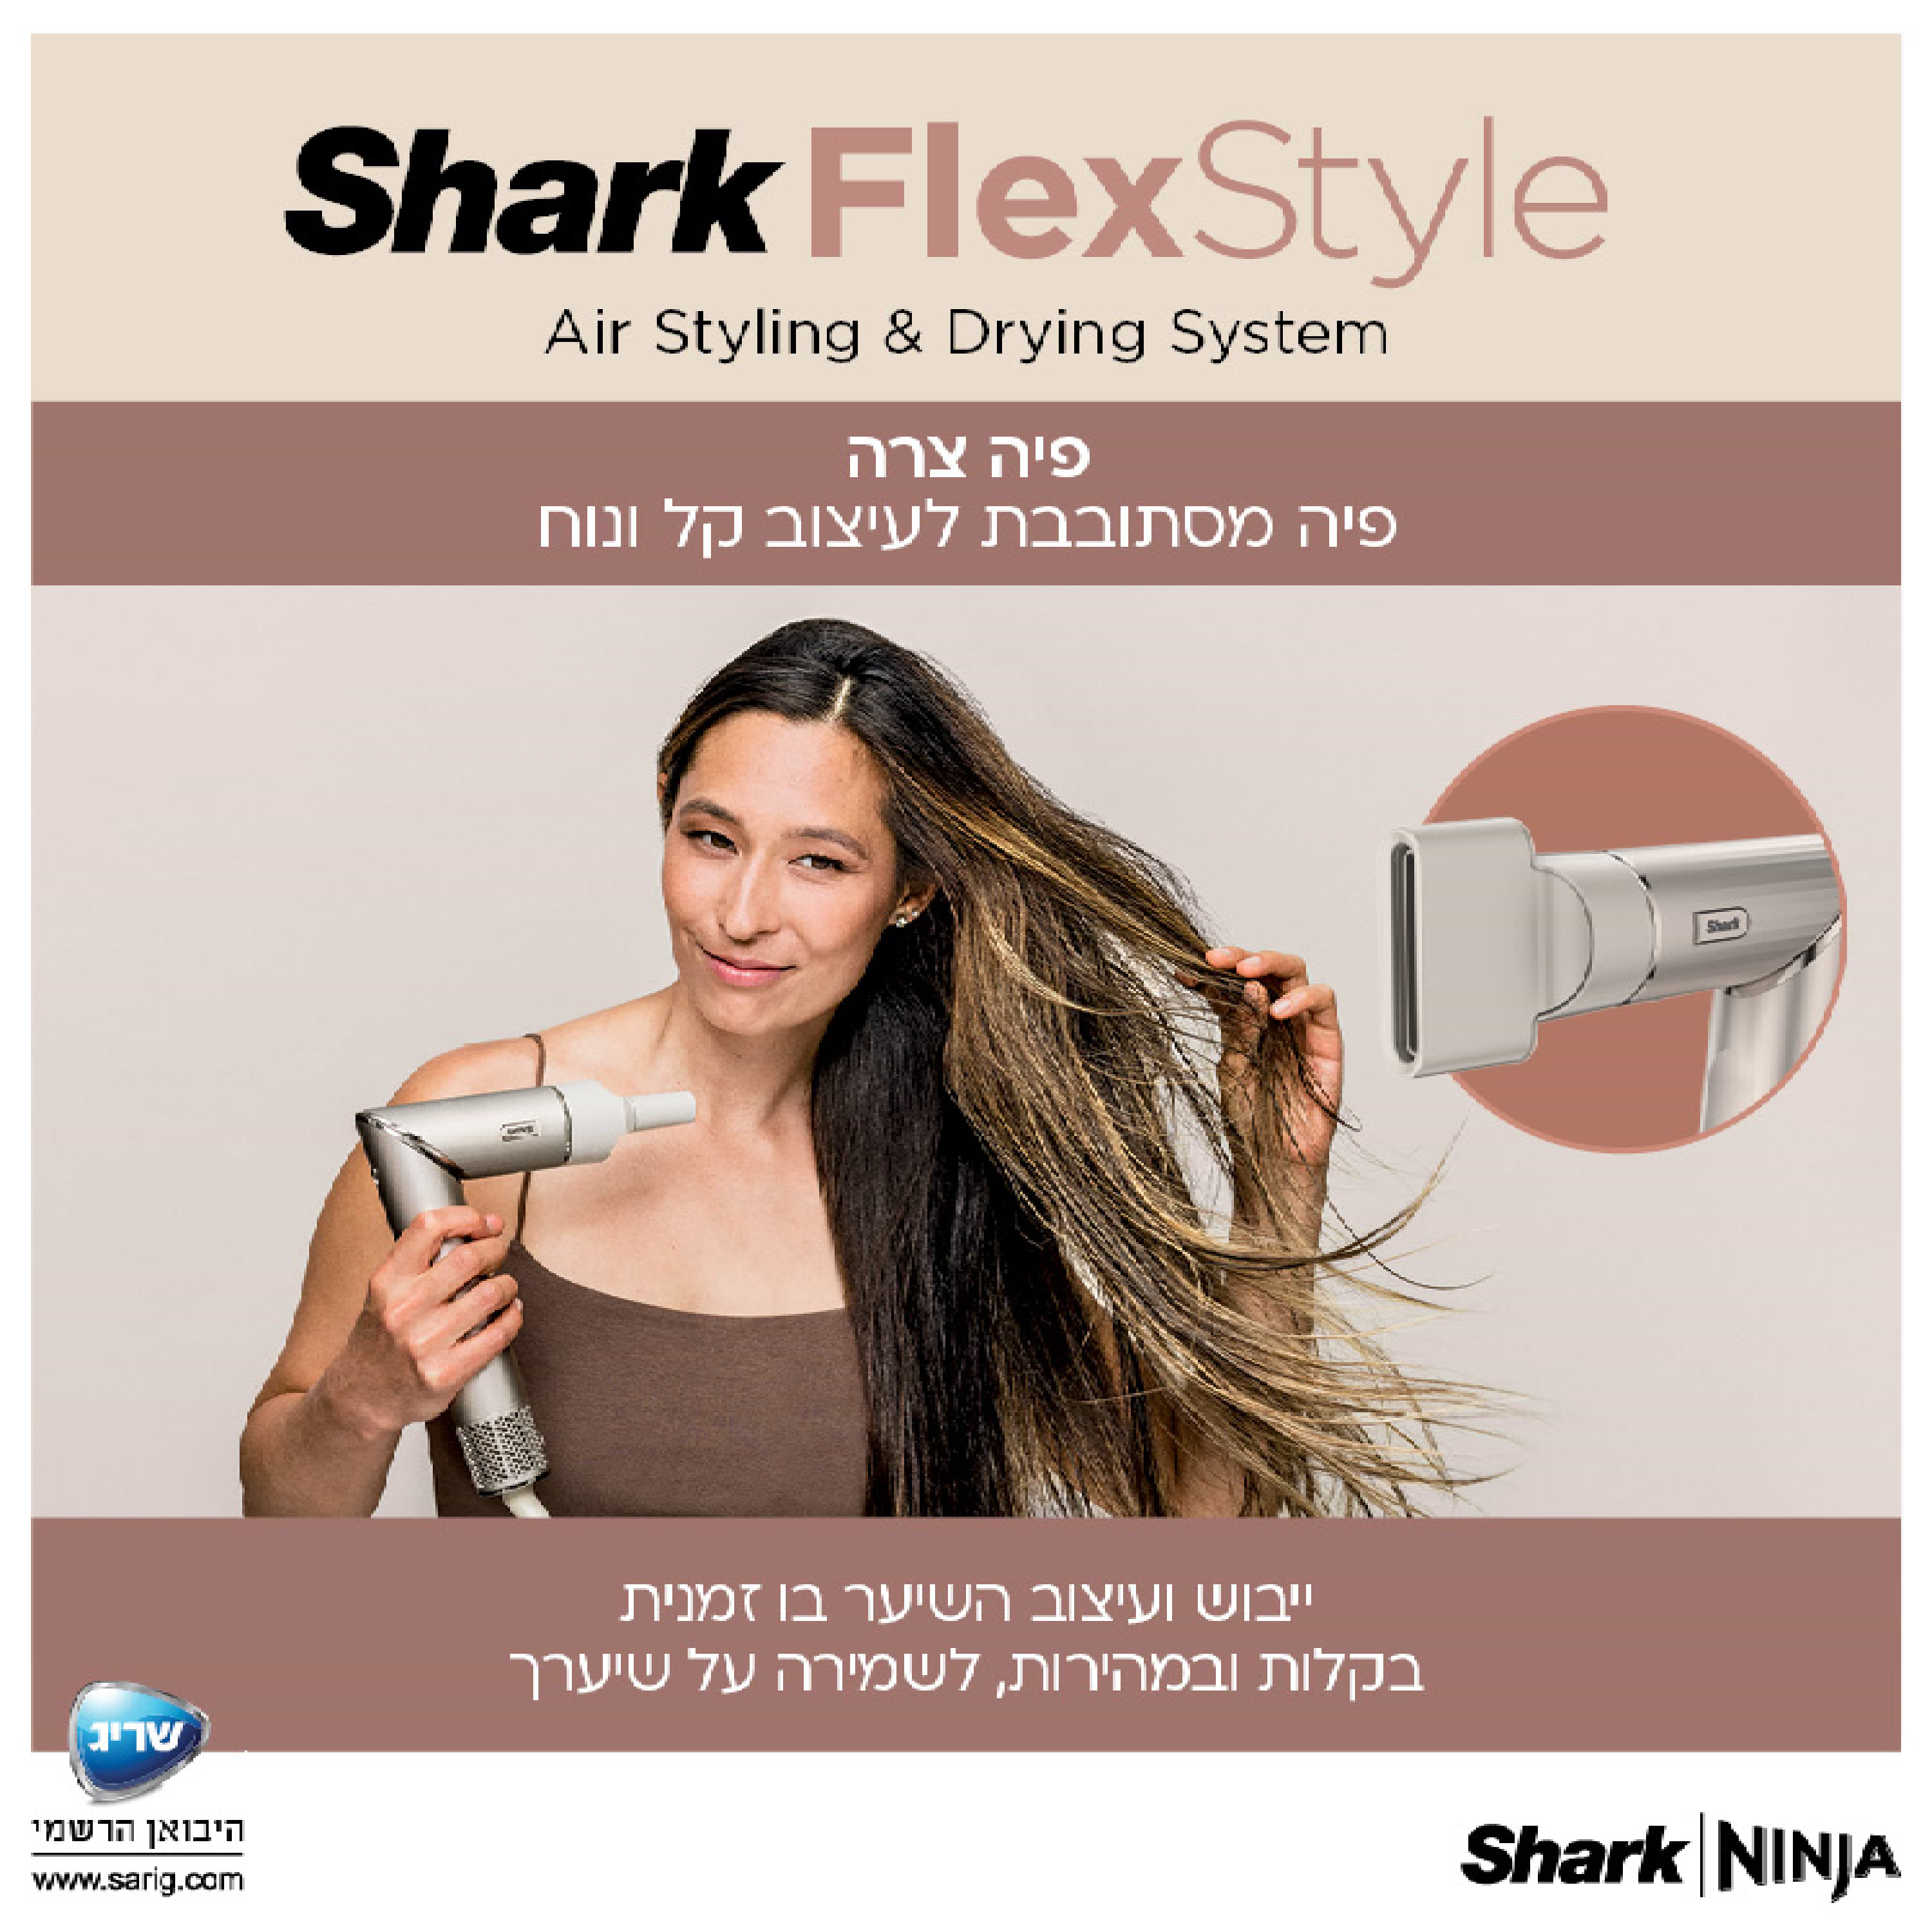 מעצב שיער Shark FlexStyle HD443 עם חמישה אביזרים נלווים לעיצוב השיער - שנתיים אחריות ע